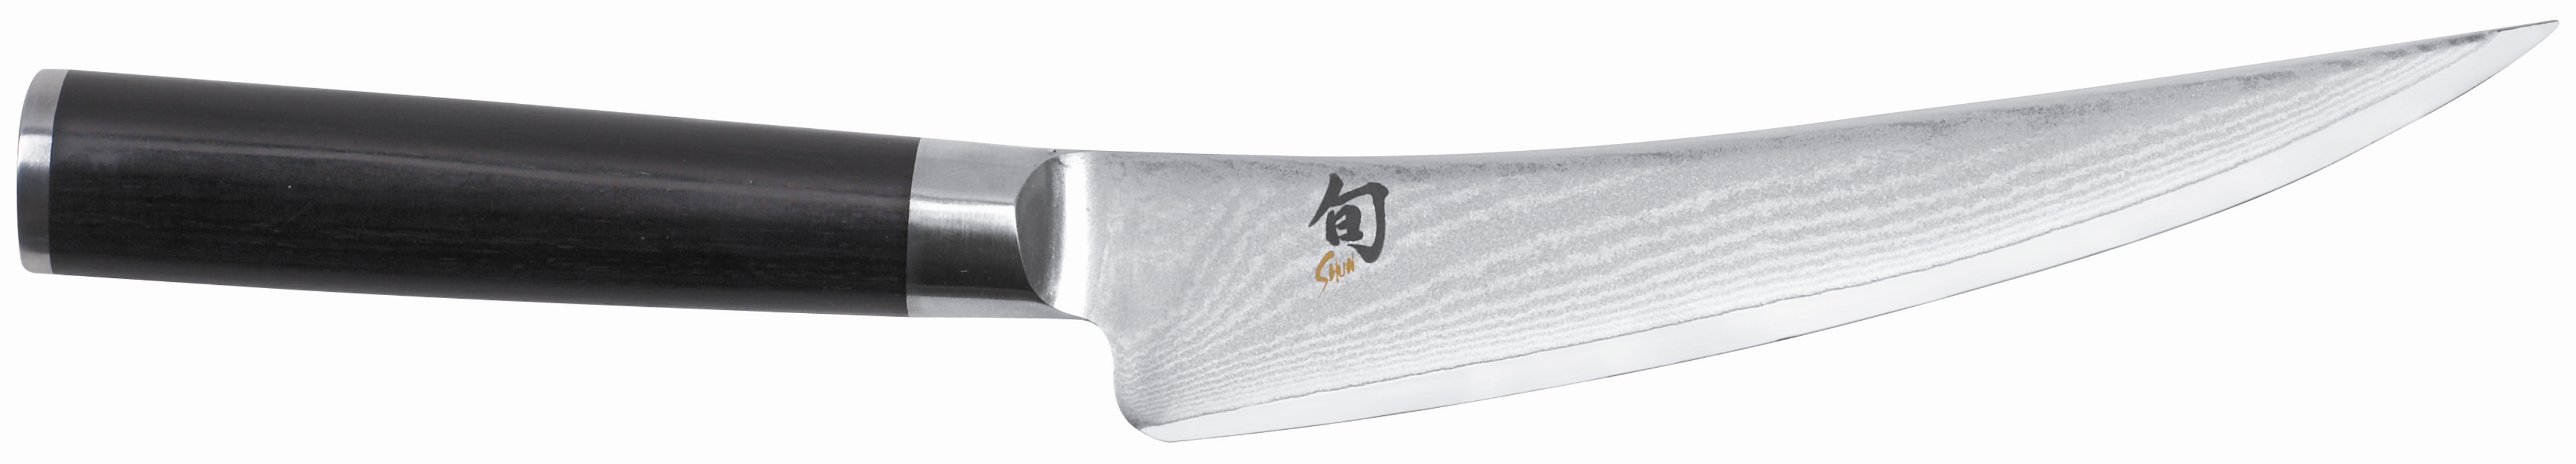 Μαχαίρι Ξεκοκκαλίσματος Shun 15.2cm Kai DM-0743